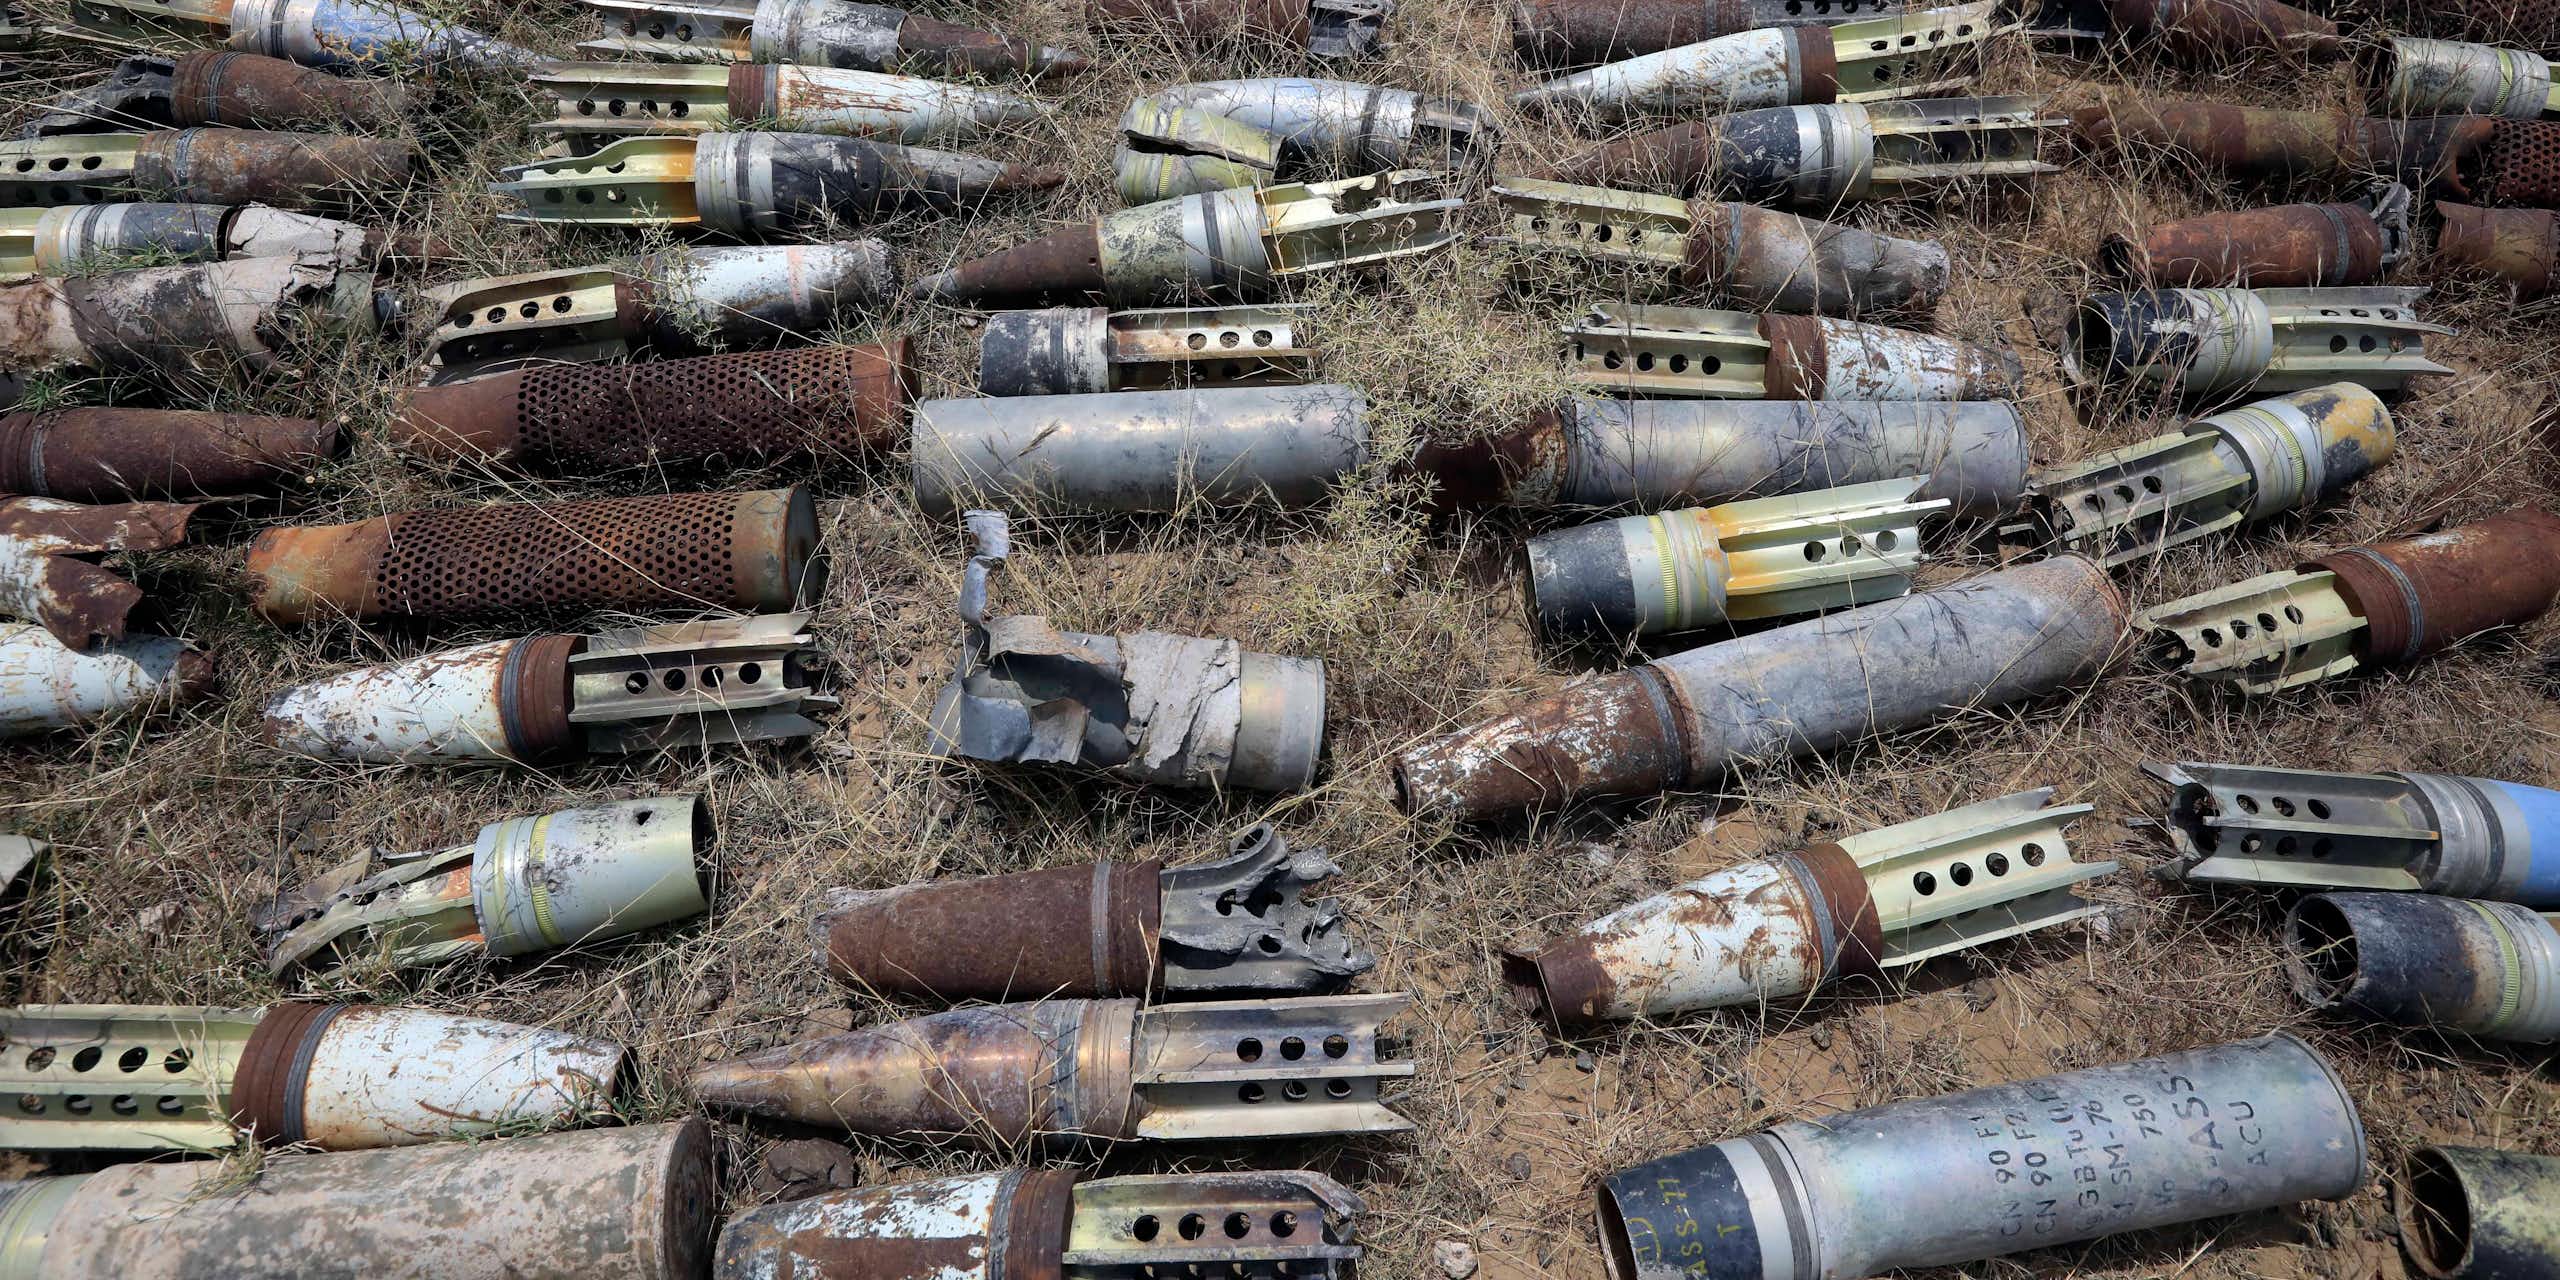 unexploded bombs in field in Yemen